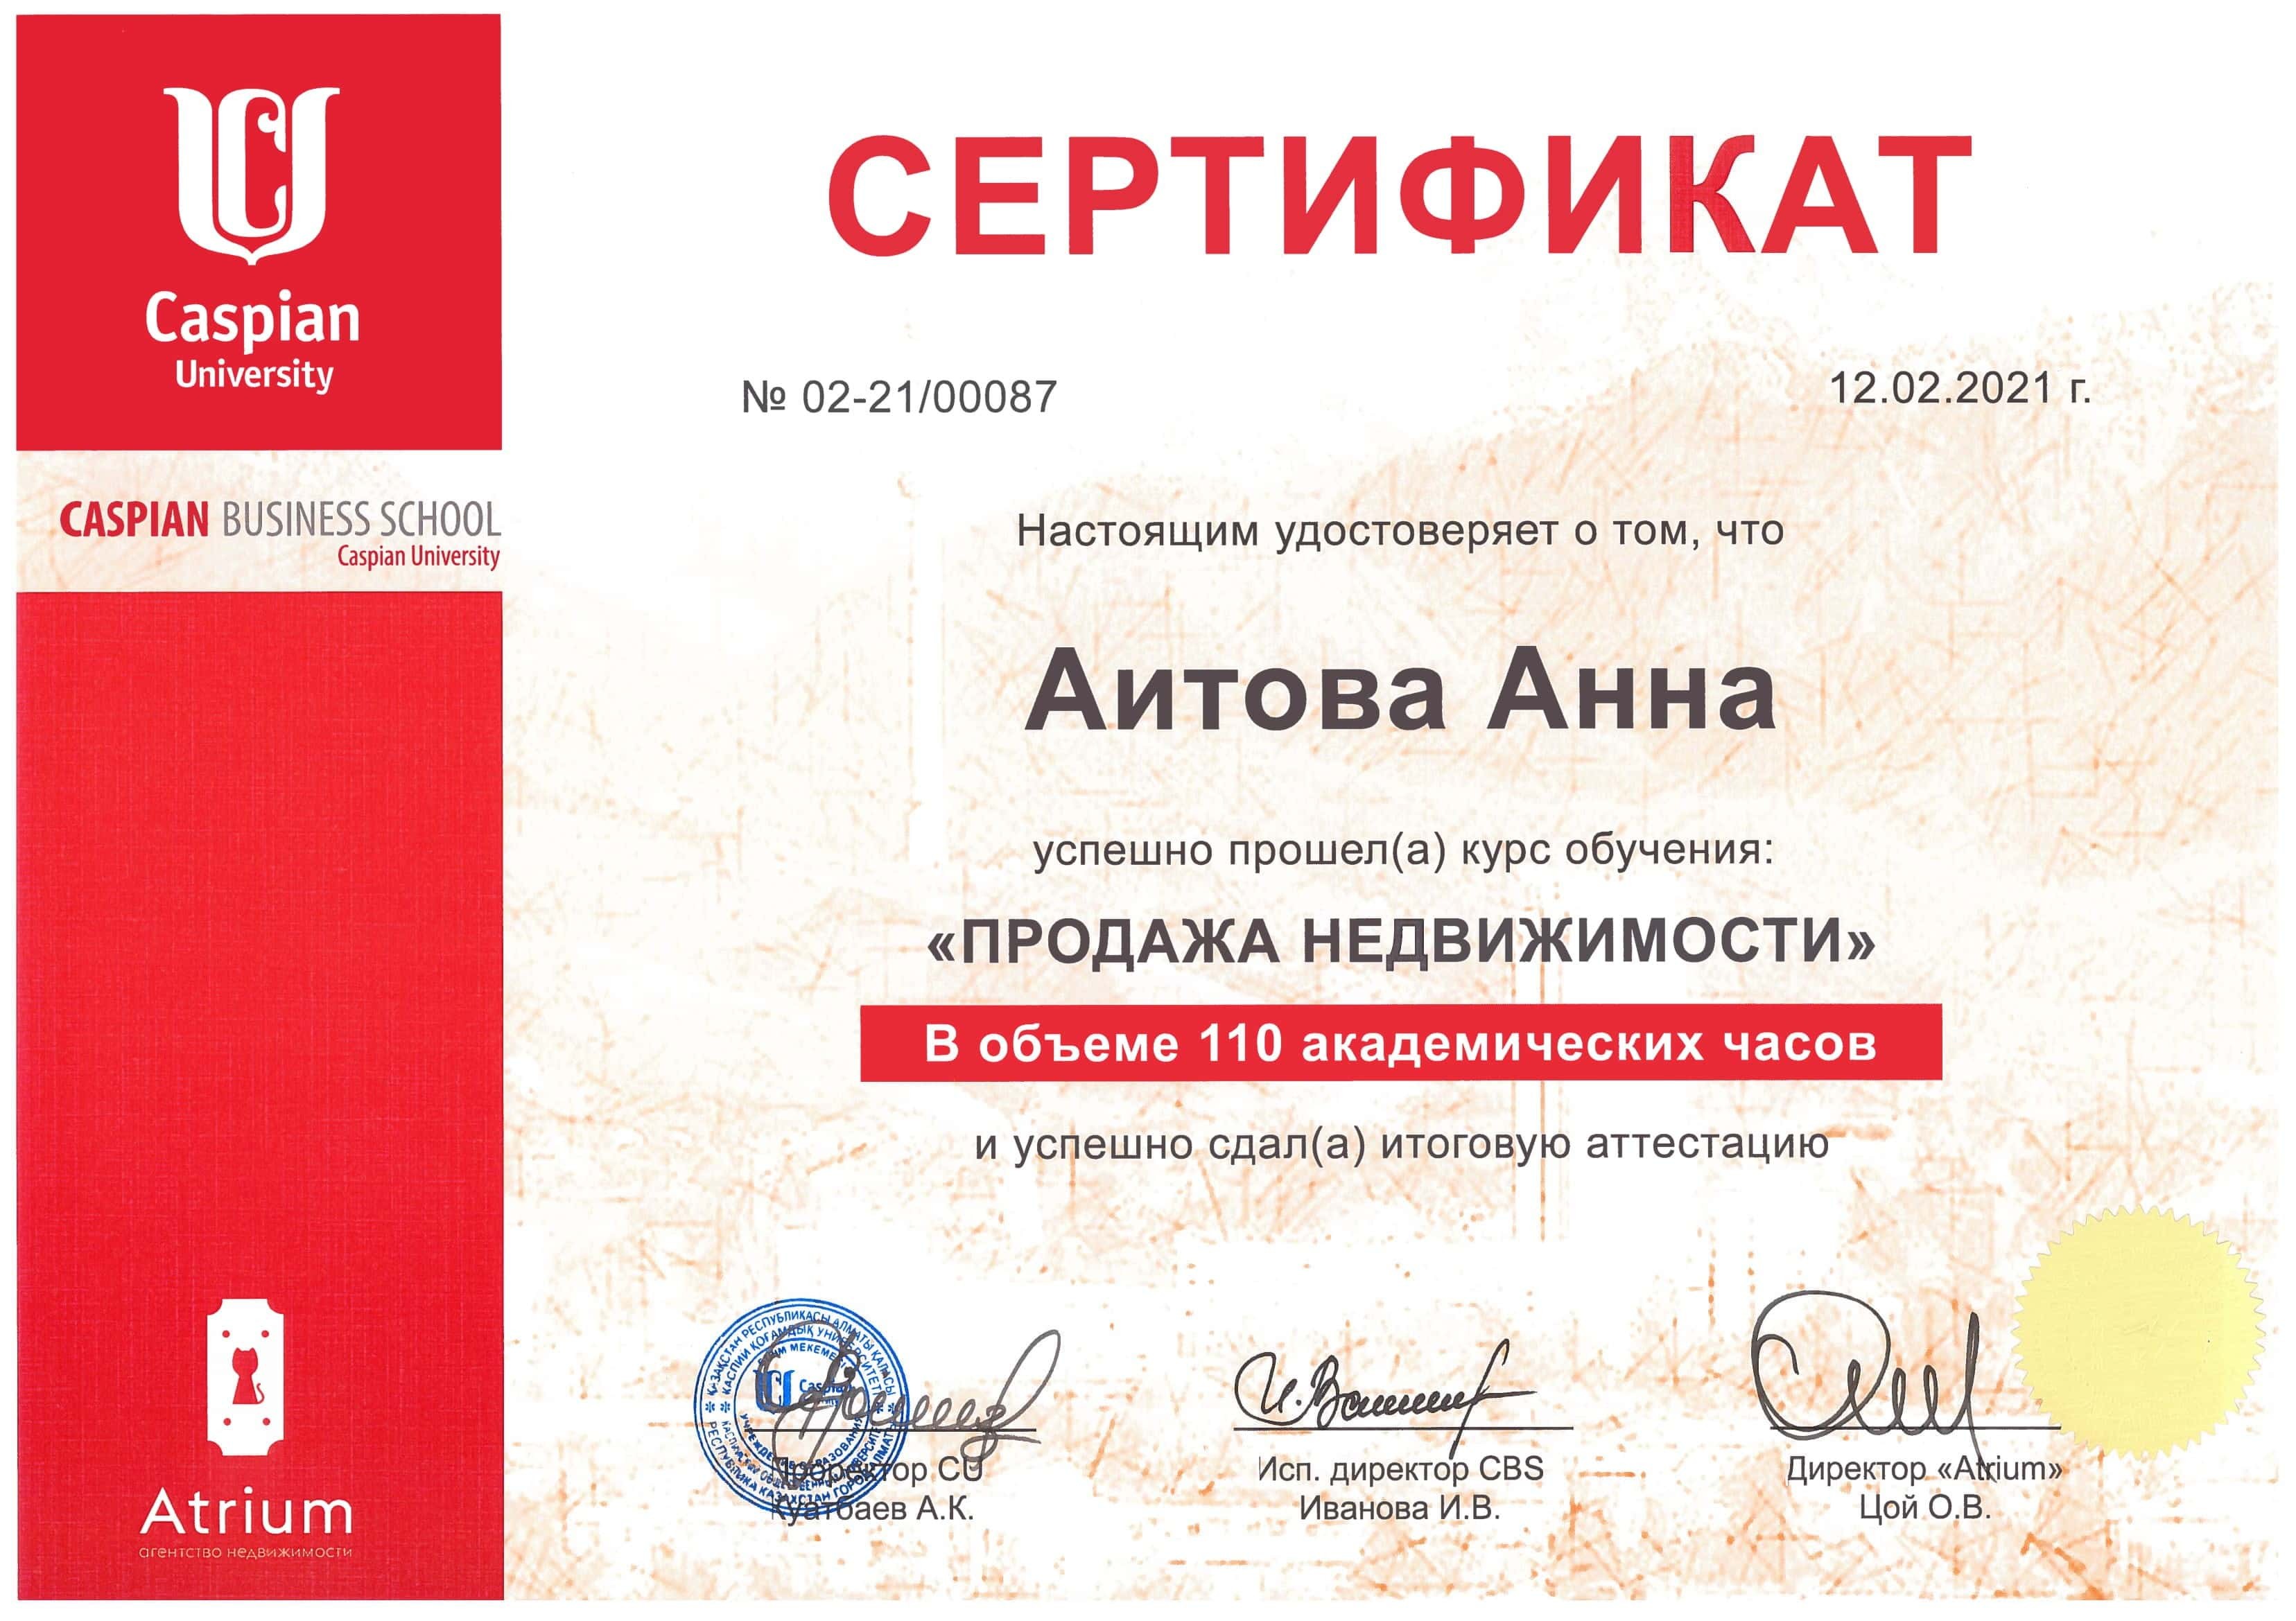 Сертификат о прохождении курса обучения "Продажа недвижимости"